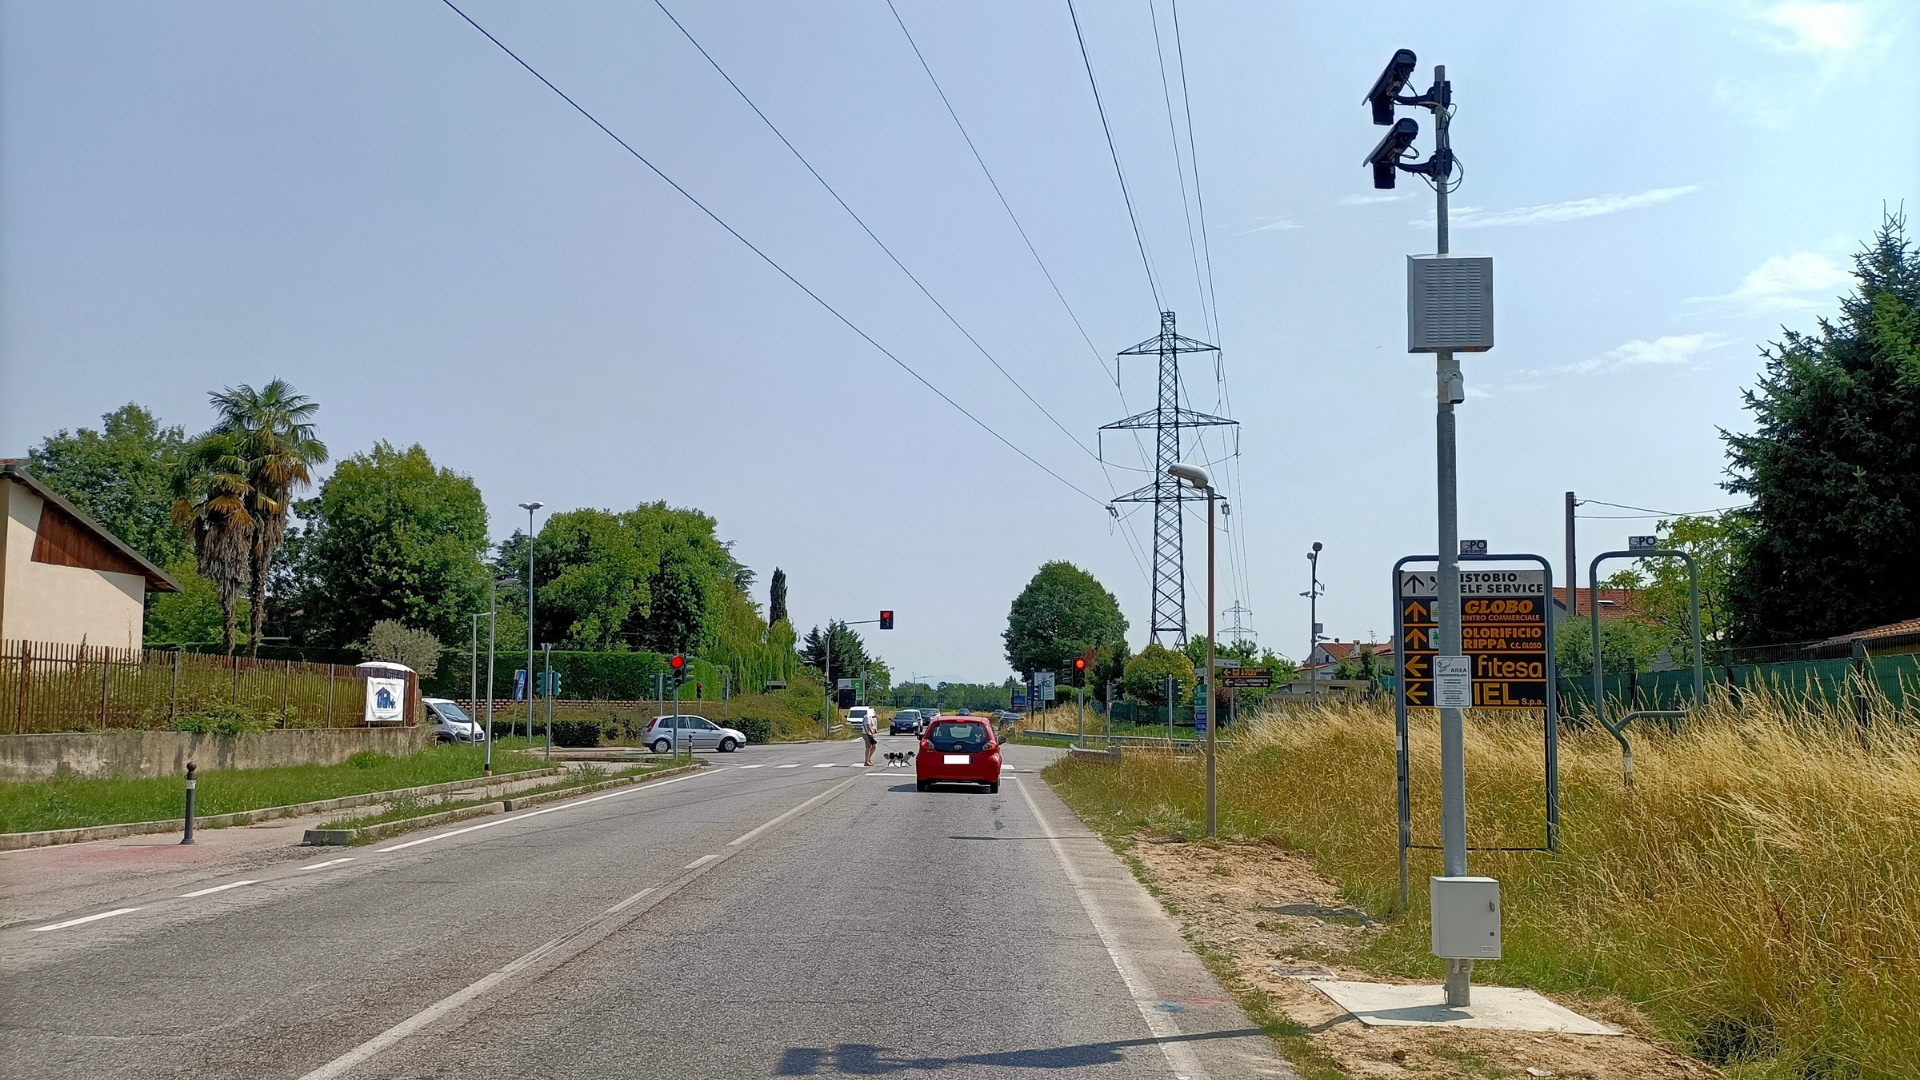 Città metropolitana di Milano: nuova installazione per il controllo degli attraversamenti semaforici lungo la S.P. 179 Villa Fornaci – Trezzo sull’Adda a Trezzano Rosa